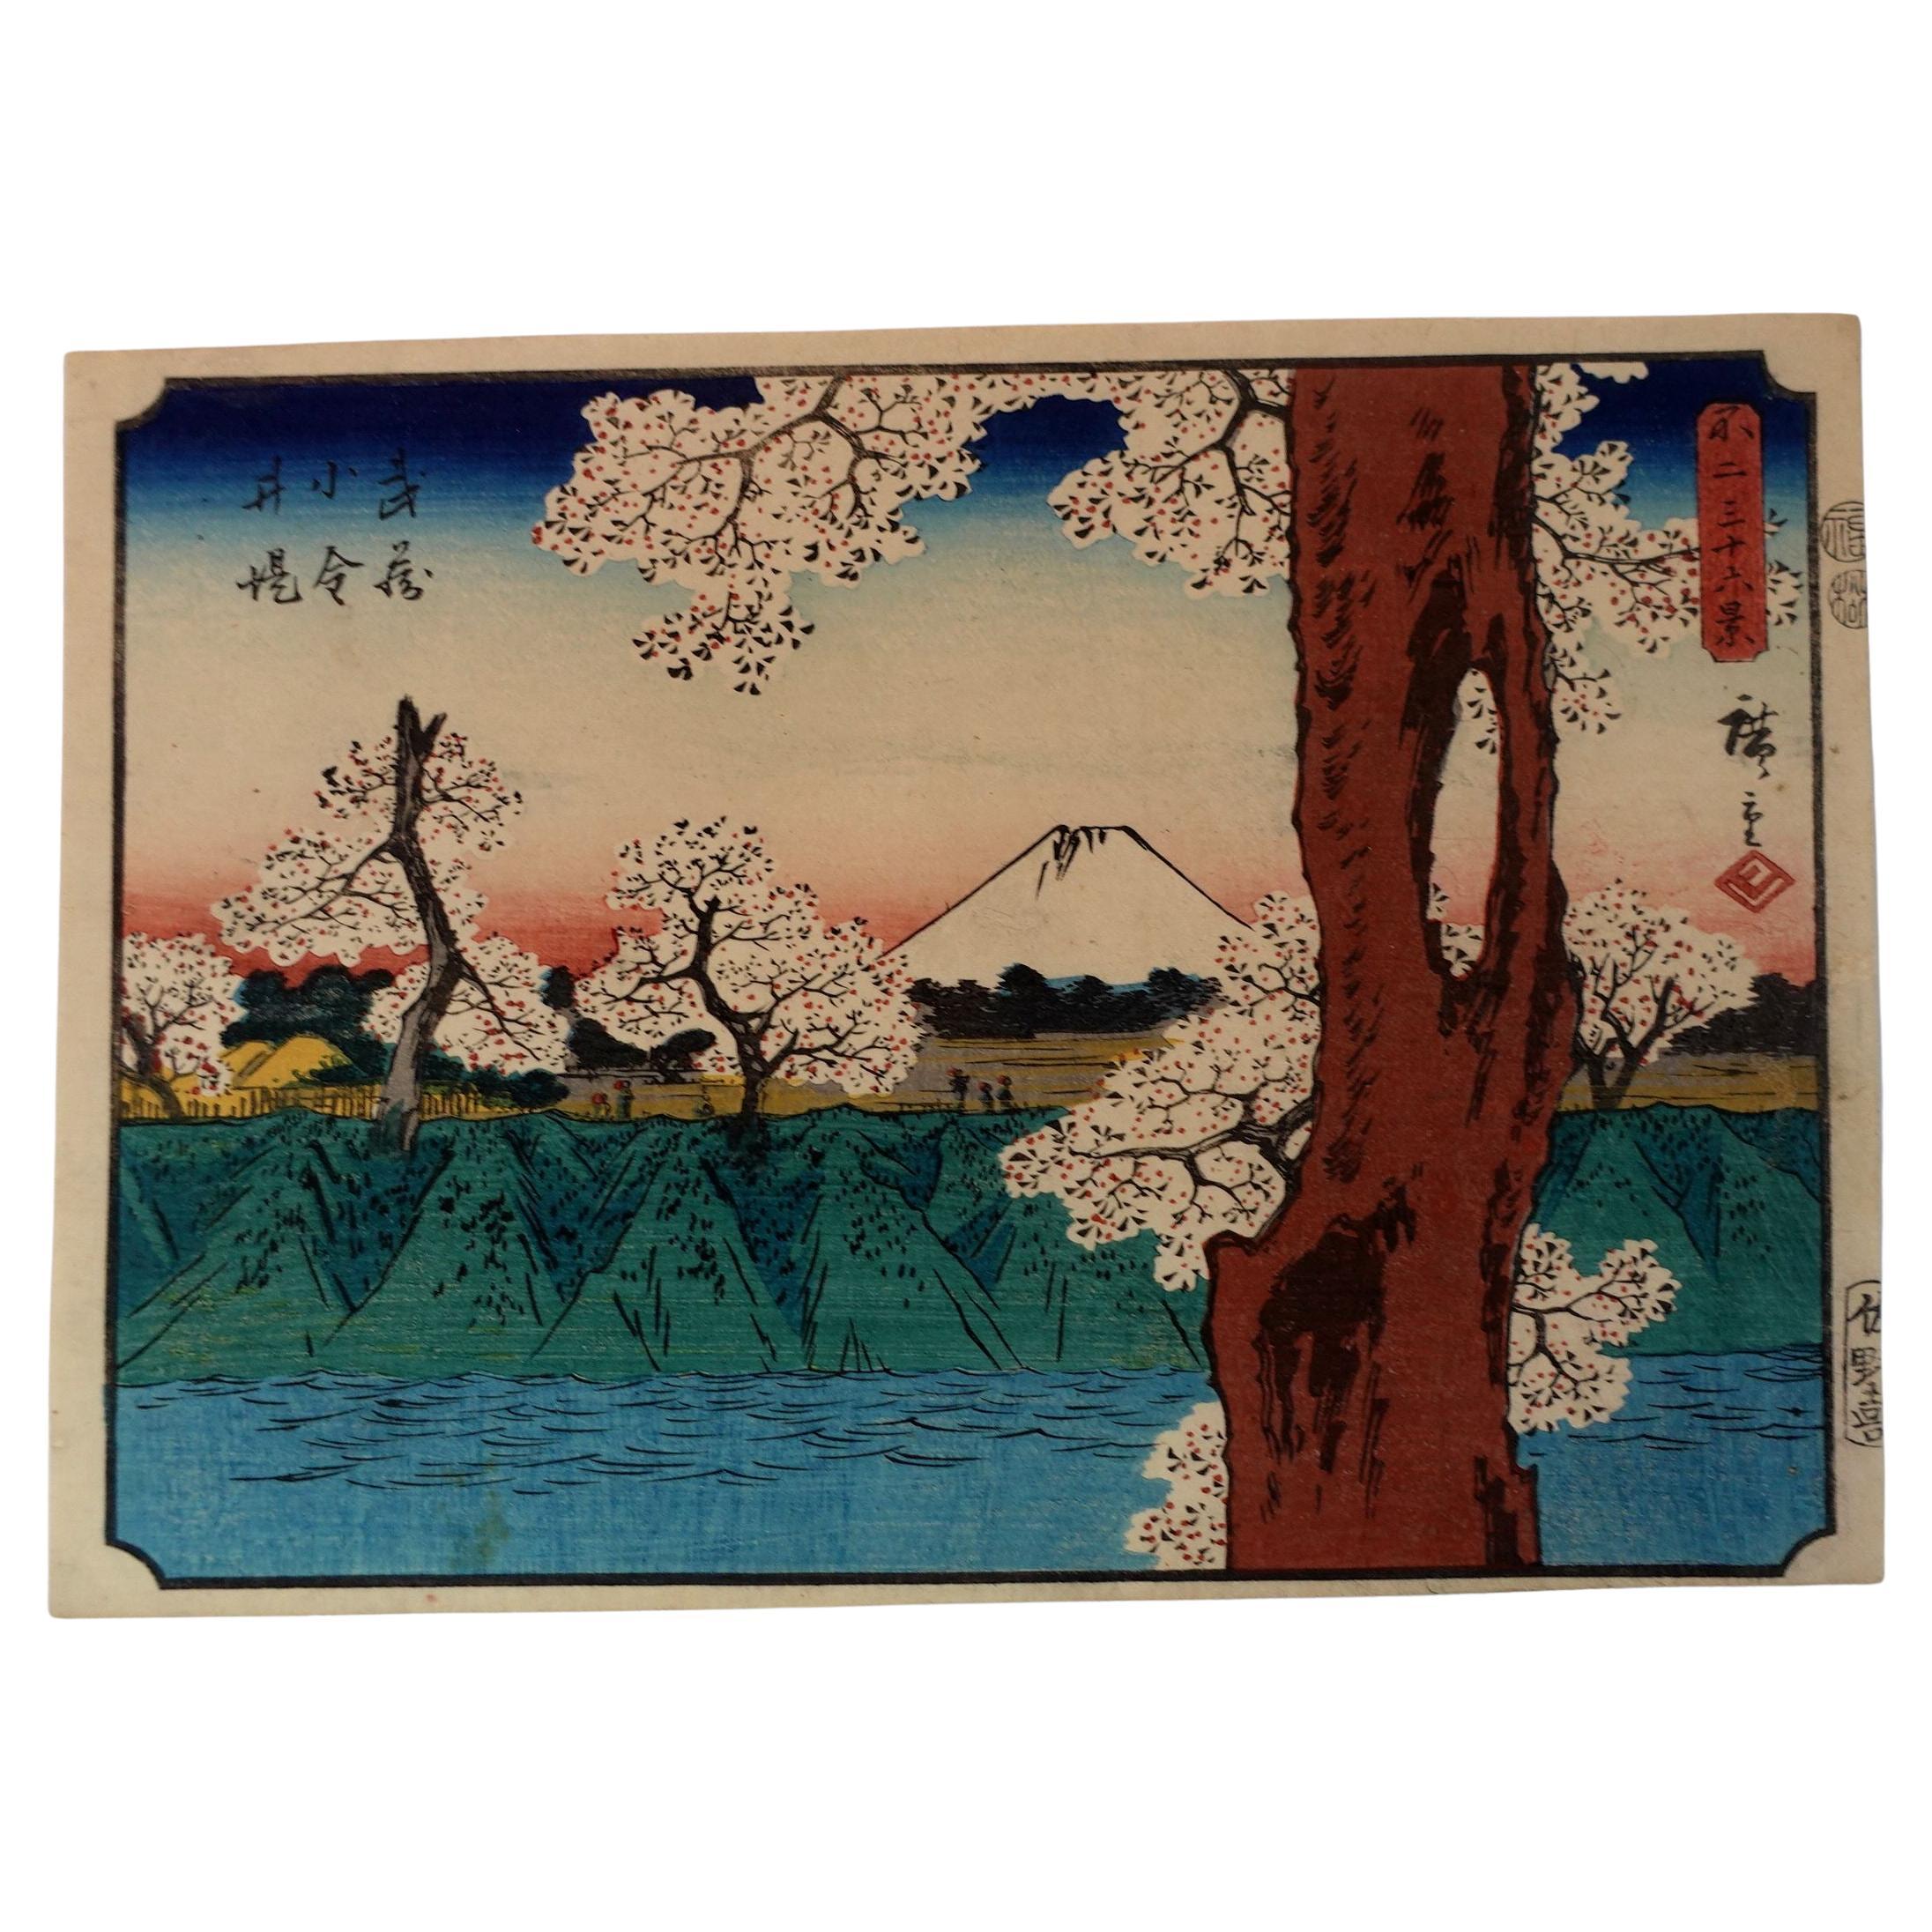 Utagawa Hiroshige 歌川廣重 Gravure sur bois R2 "Trente-six vues du mont Fuji" 1852